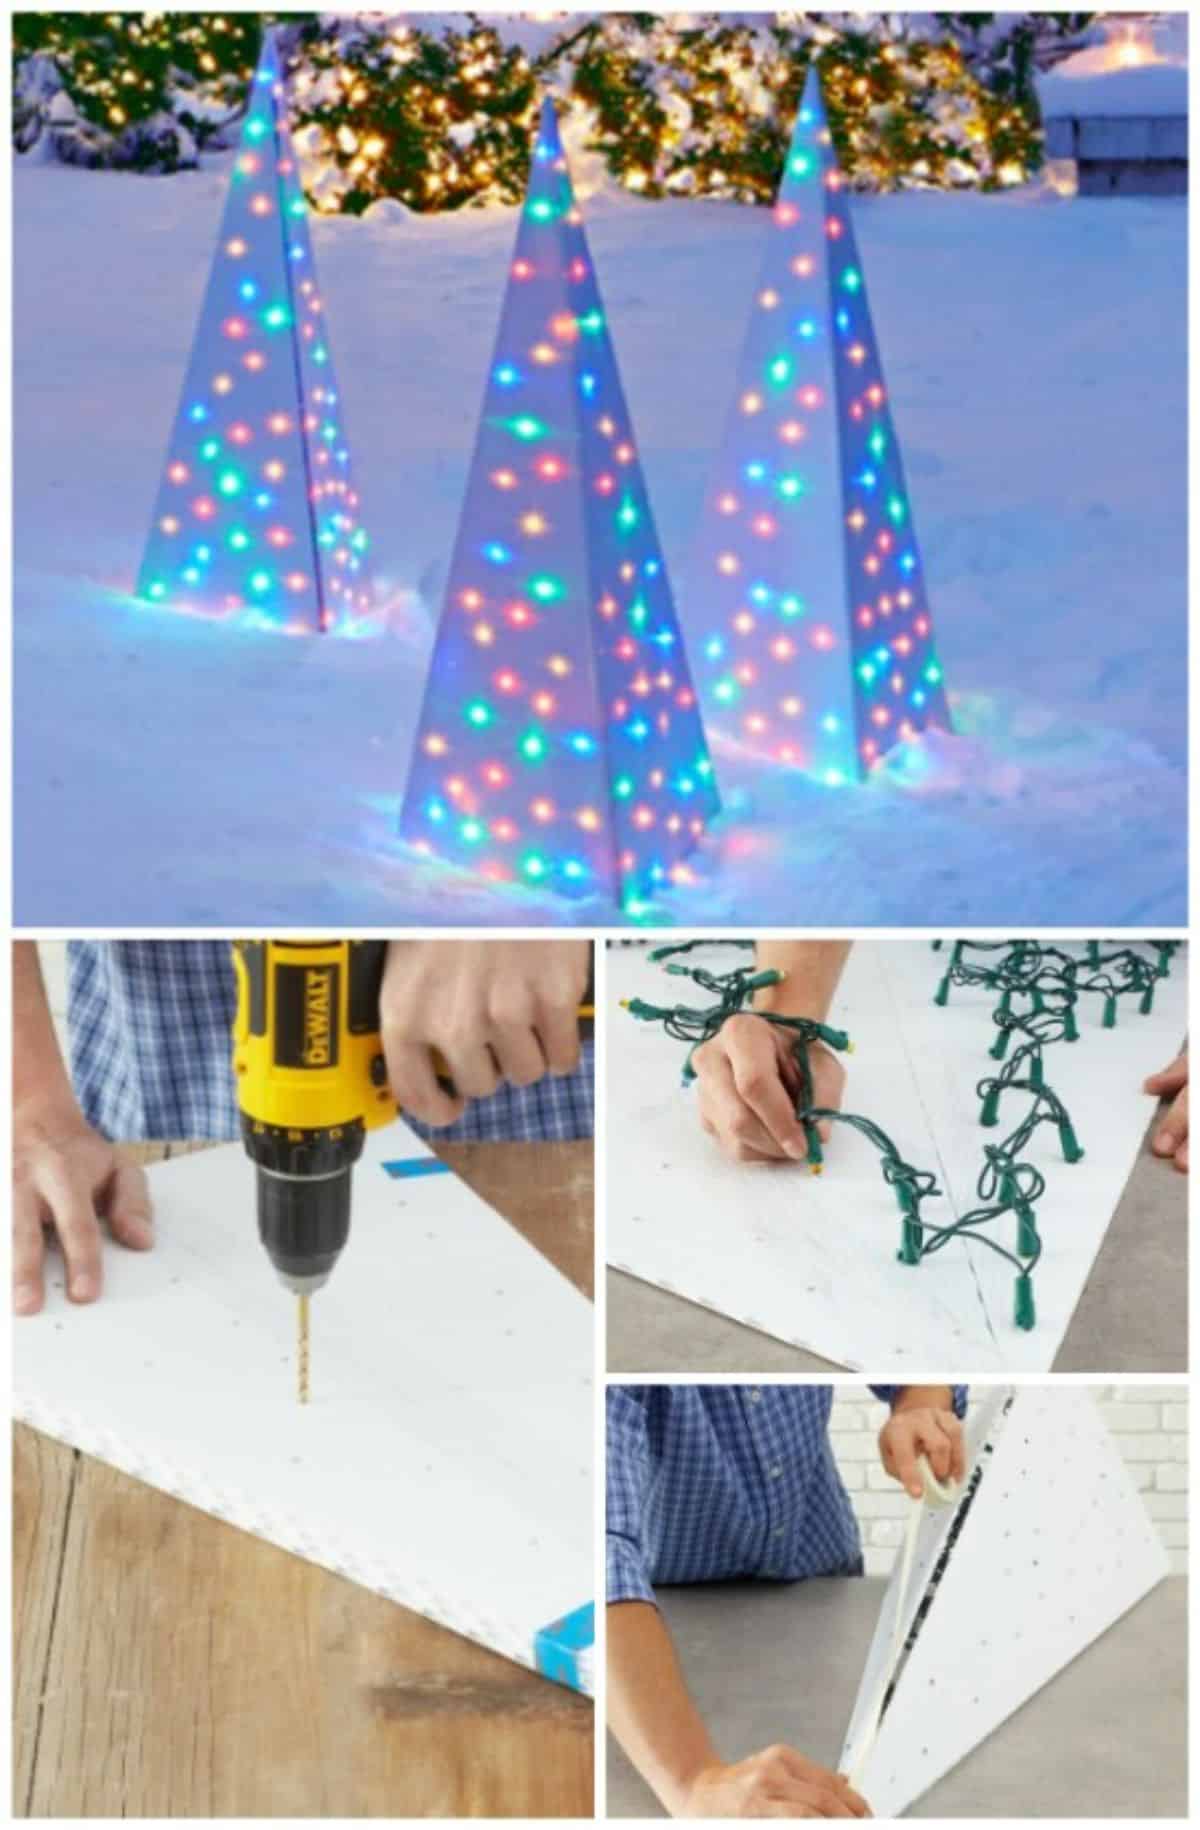 Contemporary Christmas Trees